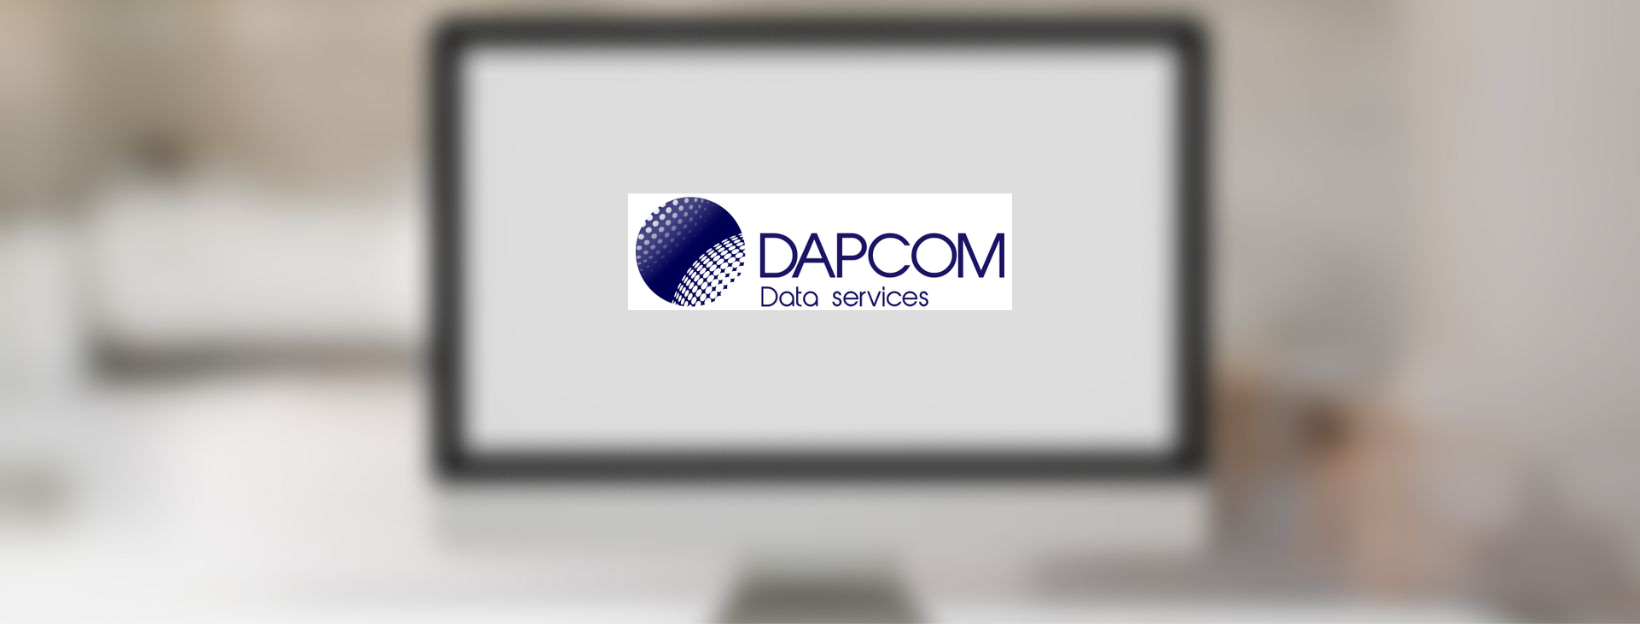 Un nou projecte SEO per Dapcom Data Services